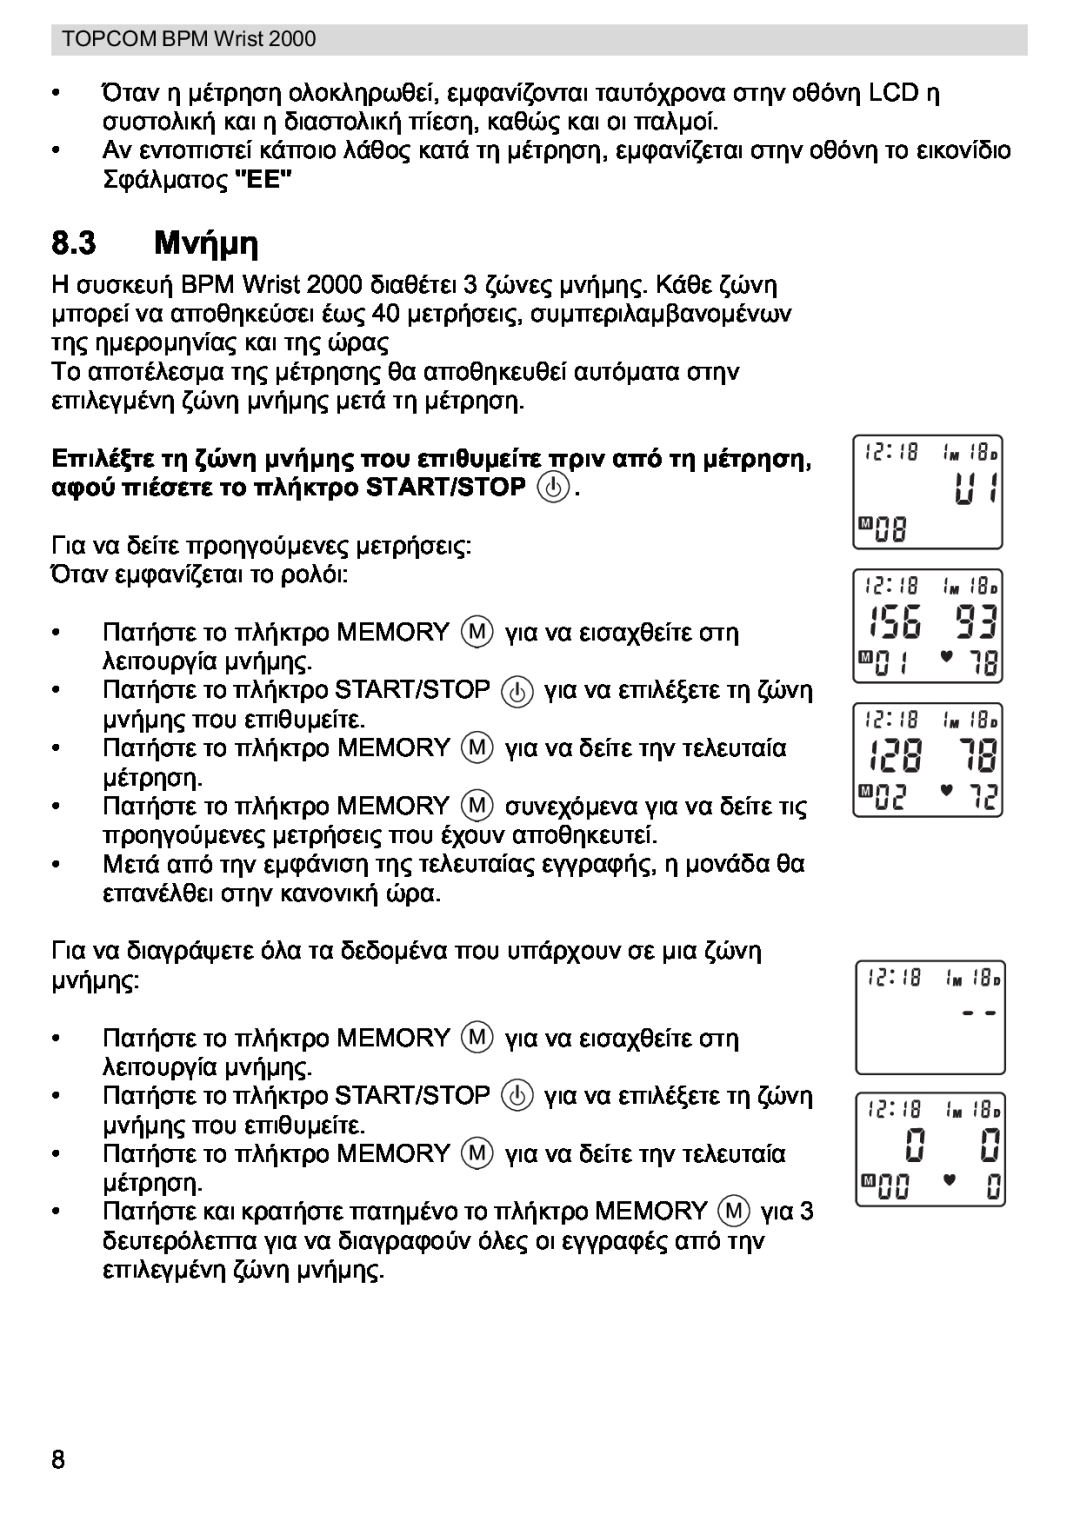 Topcom BPM WRIST 2000 manual M Wrist 2000 3, Y Art/Stop Y Y, Y Art/Stop Y Memory 